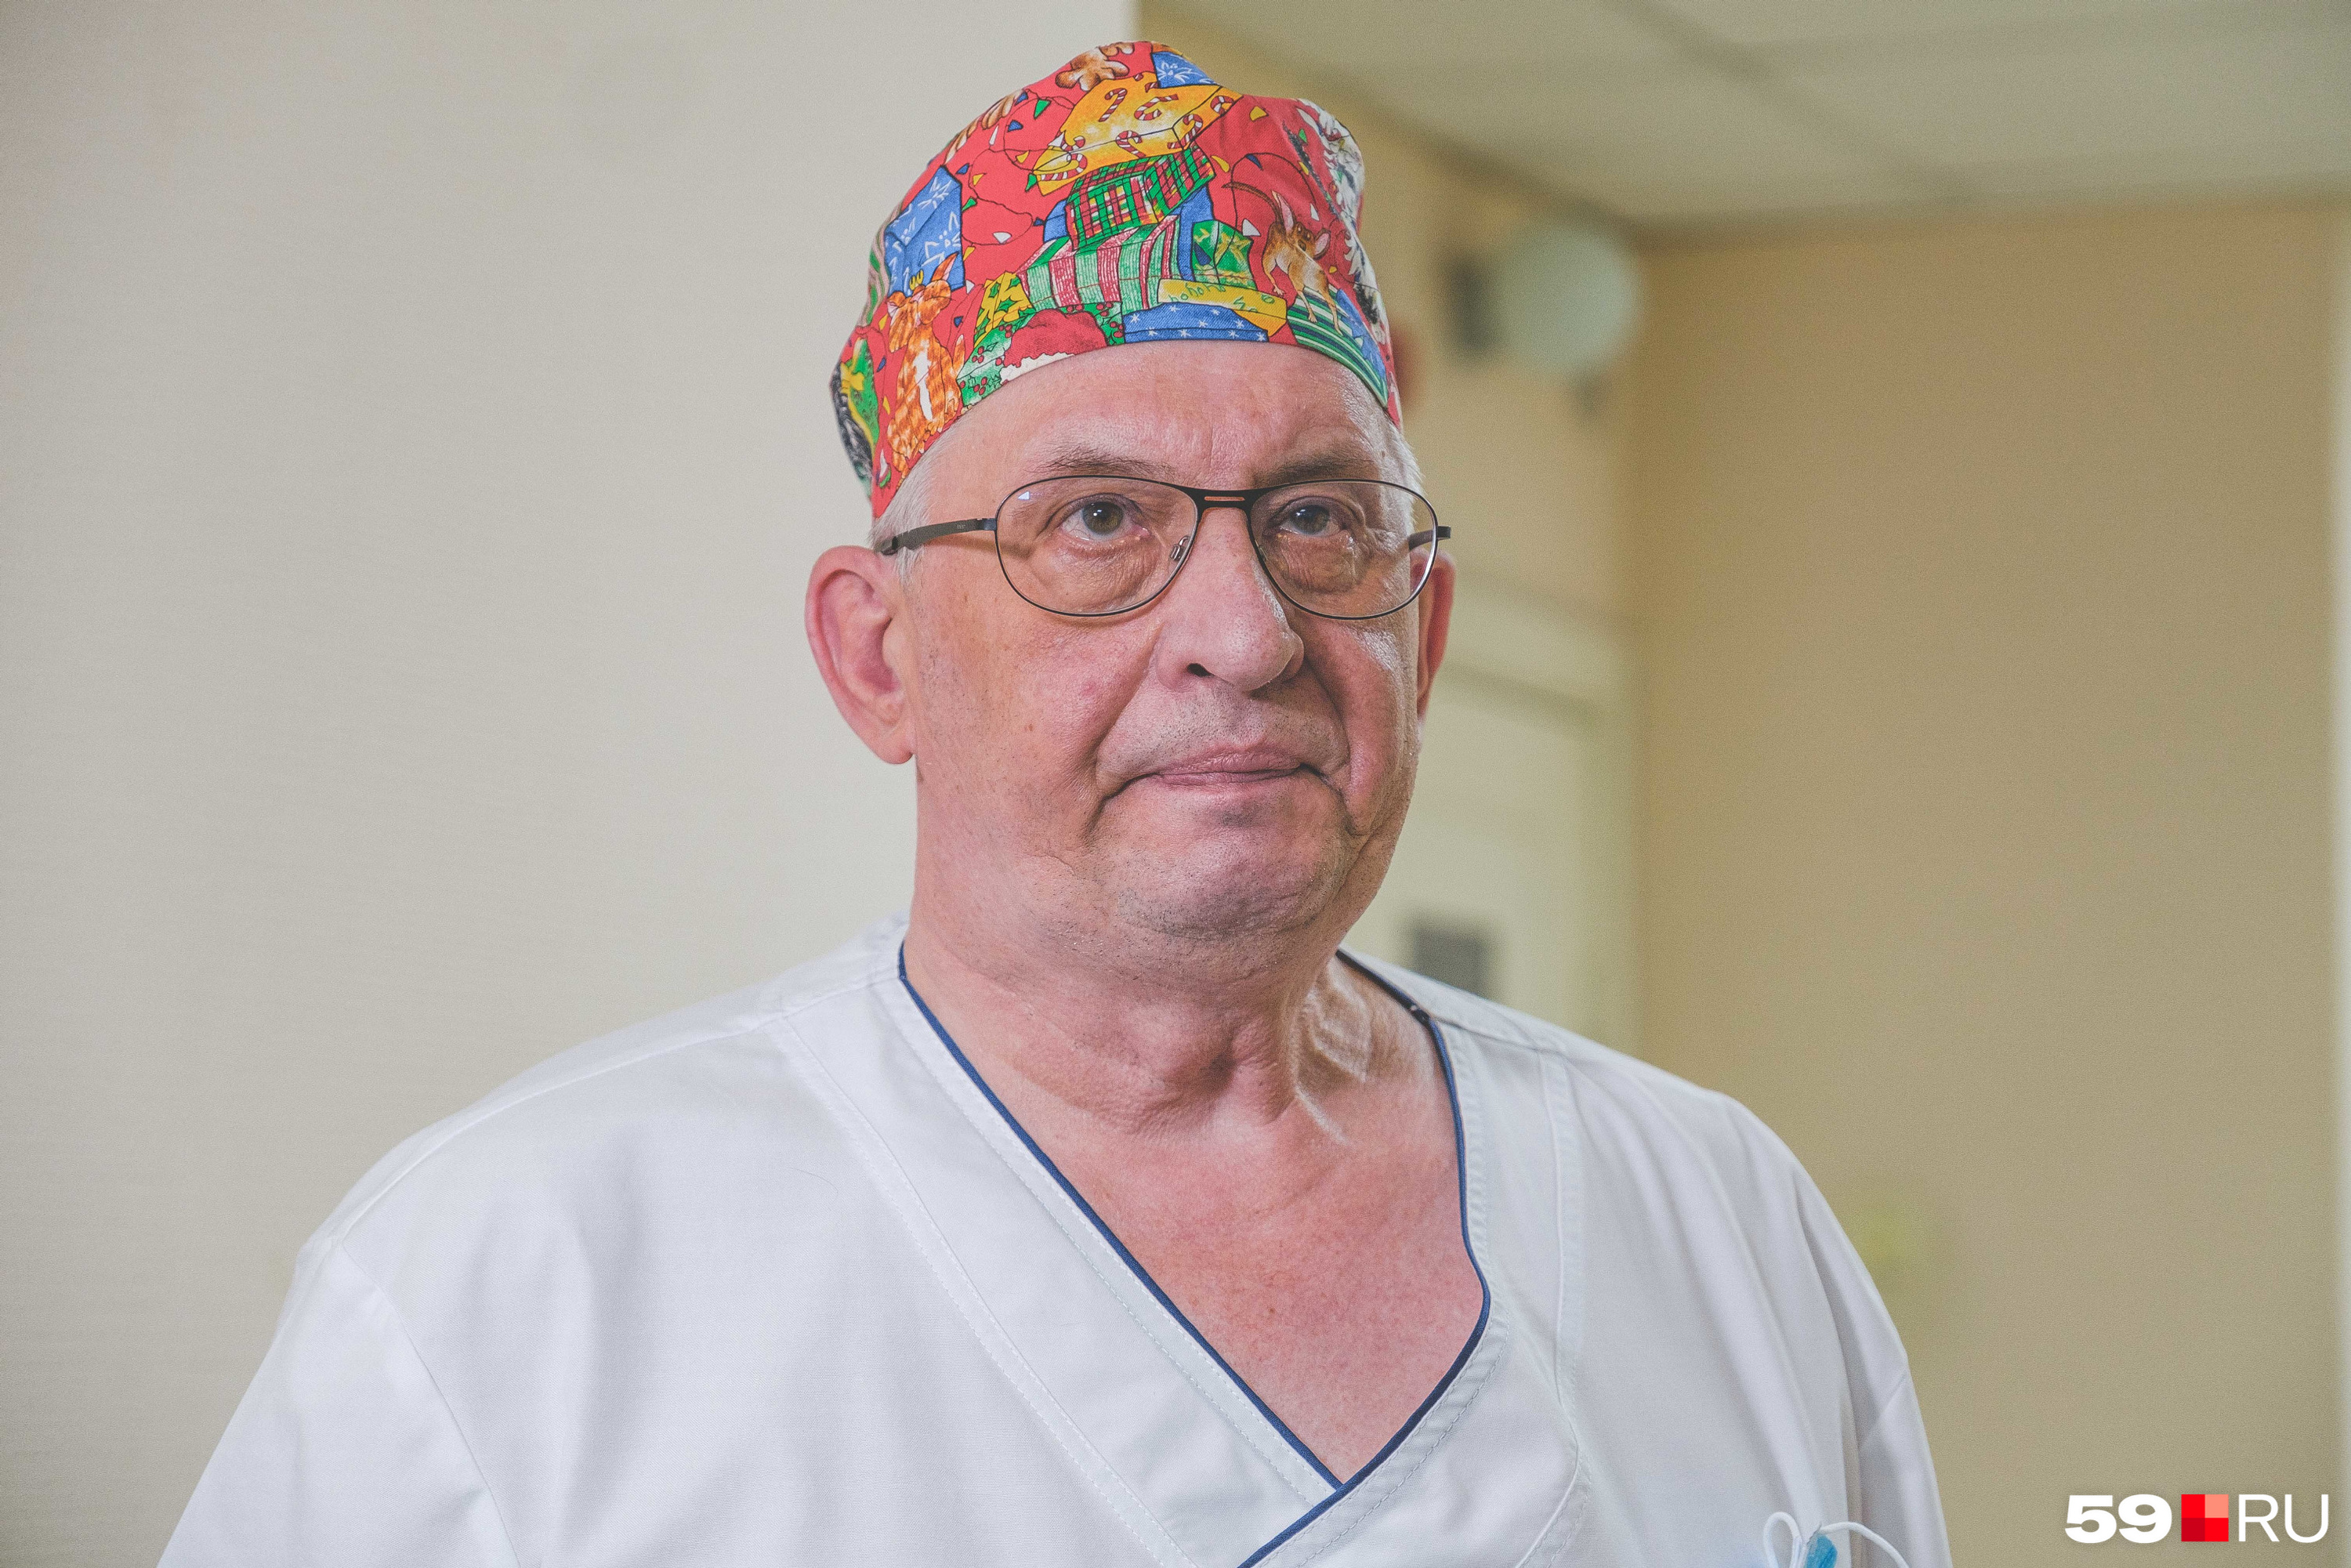 Константин Данилов, заведующий отделением опухолей головы и шеи пермского онкодиспансера